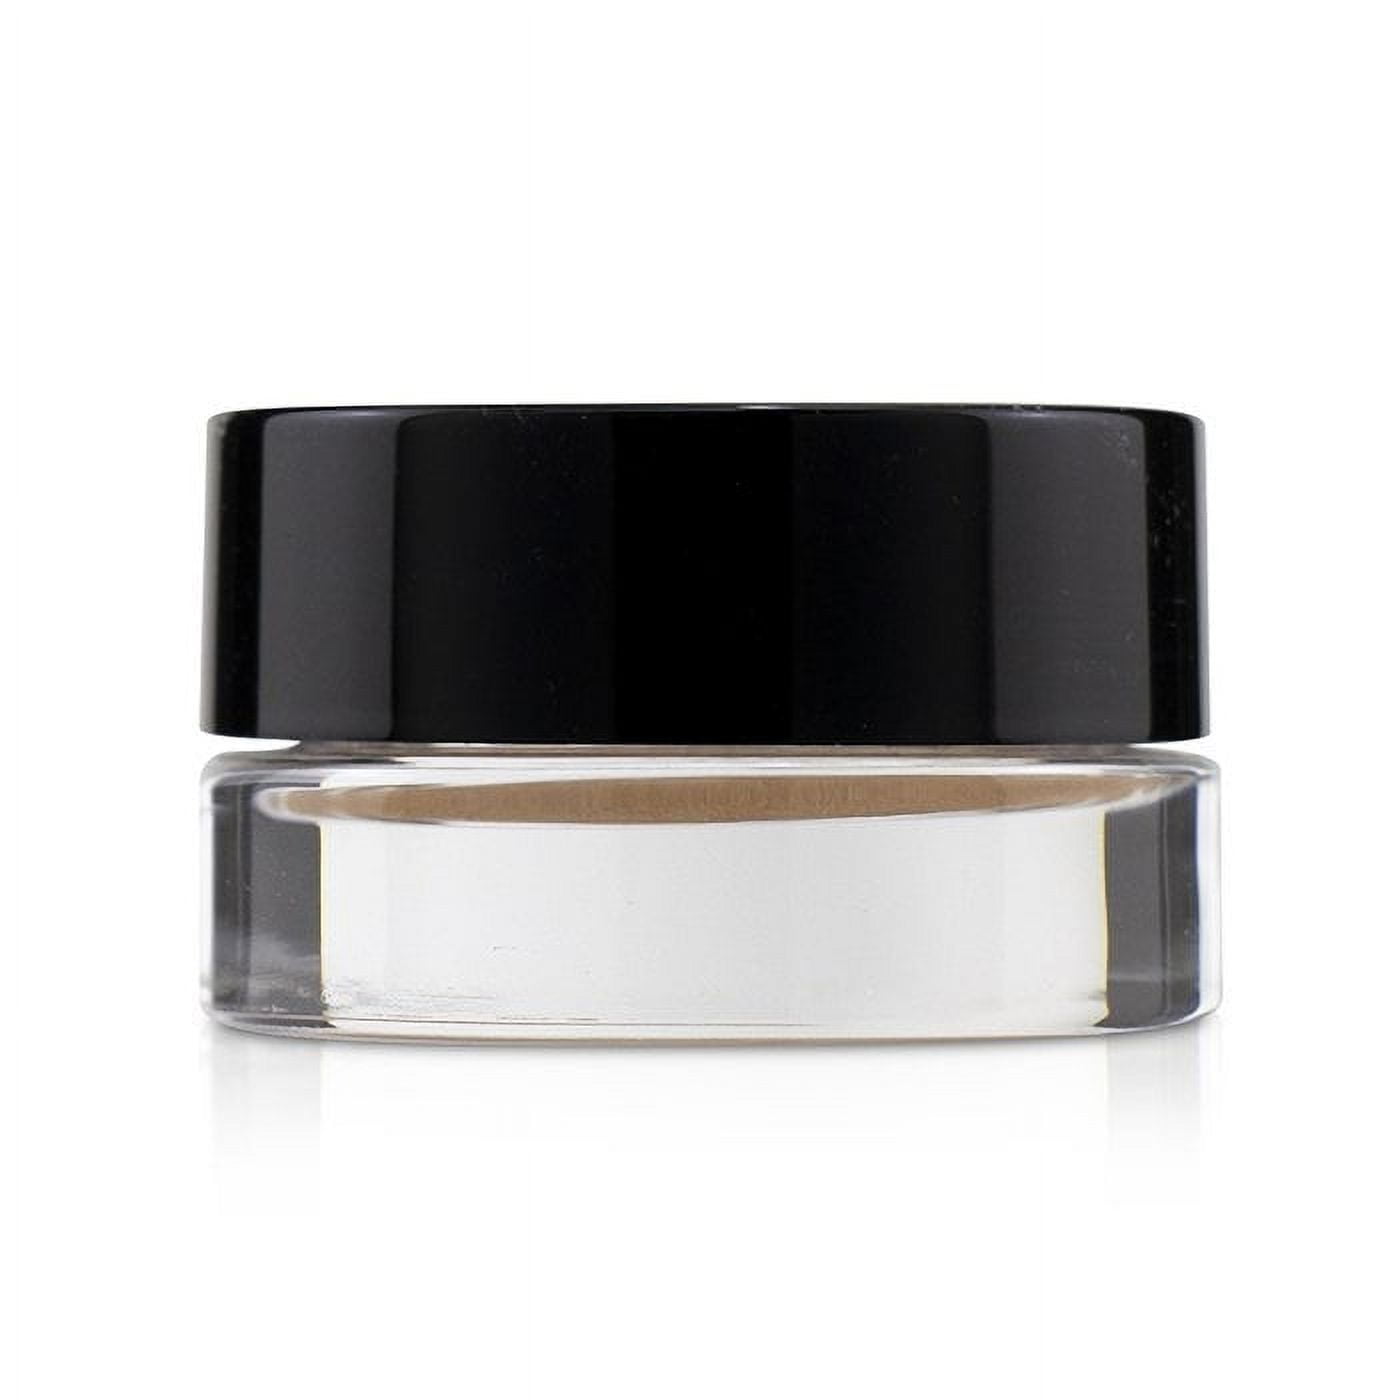  Chanel Ombre Premiere Longwear Cream Eyeshadow for